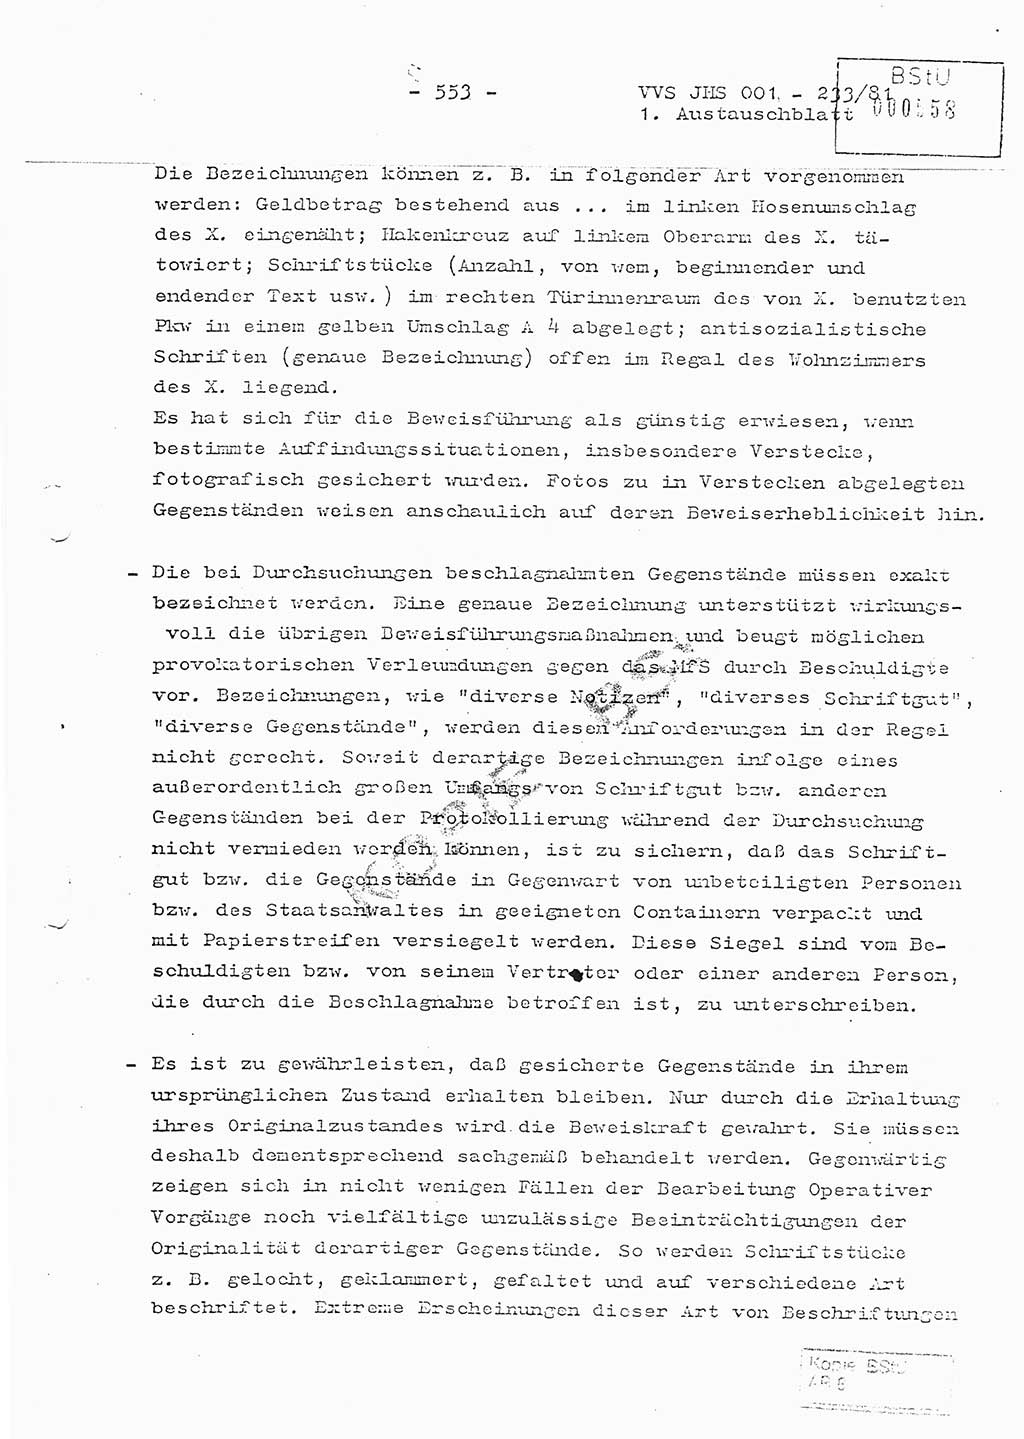 Dissertation Oberstleutnant Horst Zank (JHS), Oberstleutnant Dr. Karl-Heinz Knoblauch (JHS), Oberstleutnant Gustav-Adolf Kowalewski (HA Ⅸ), Oberstleutnant Wolfgang Plötner (HA Ⅸ), Ministerium für Staatssicherheit (MfS) [Deutsche Demokratische Republik (DDR)], Juristische Hochschule (JHS), Vertrauliche Verschlußsache (VVS) o001-233/81, Potsdam 1981, Blatt 553 (Diss. MfS DDR JHS VVS o001-233/81 1981, Bl. 553)